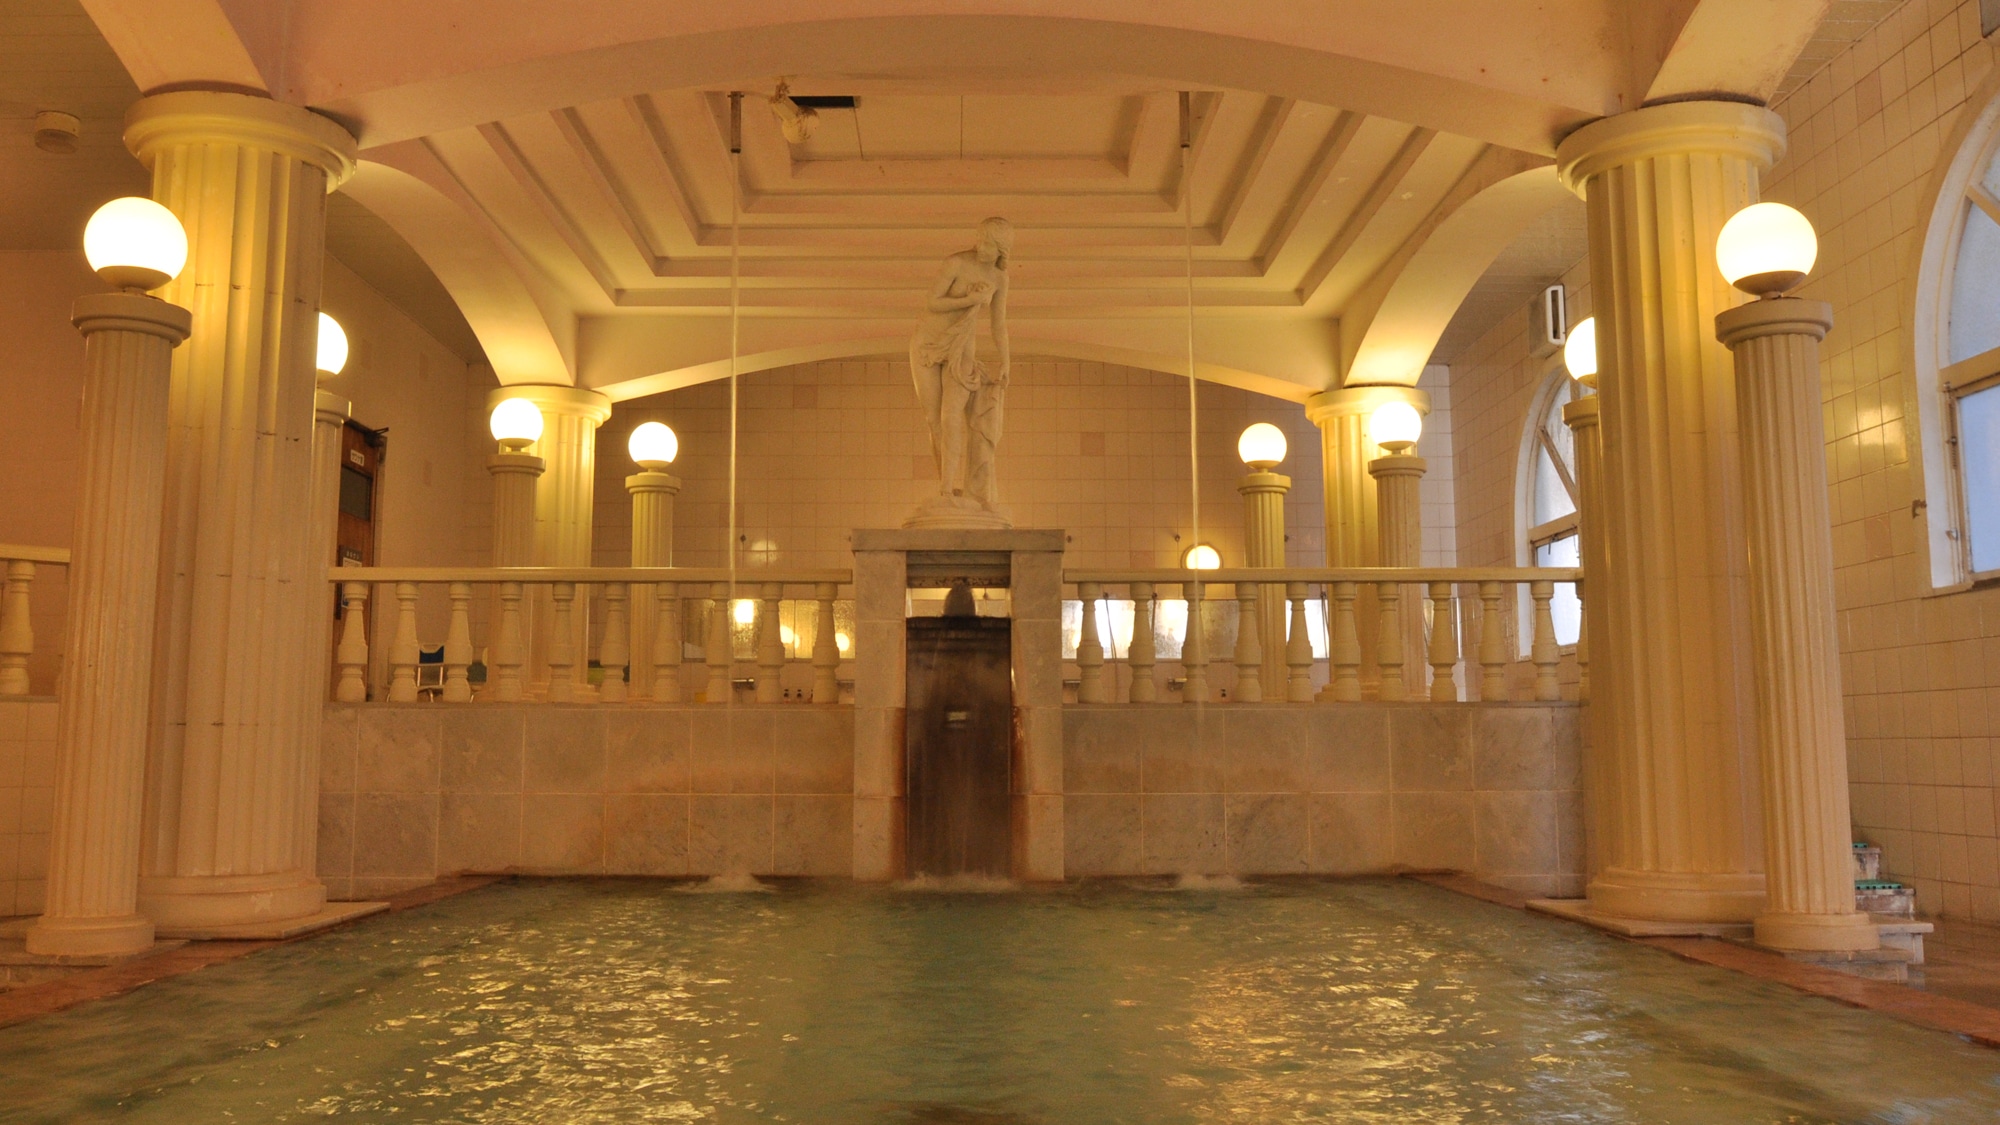 [西式浴池] 古希腊形象的“帕台农神庙热水” 天花板松散